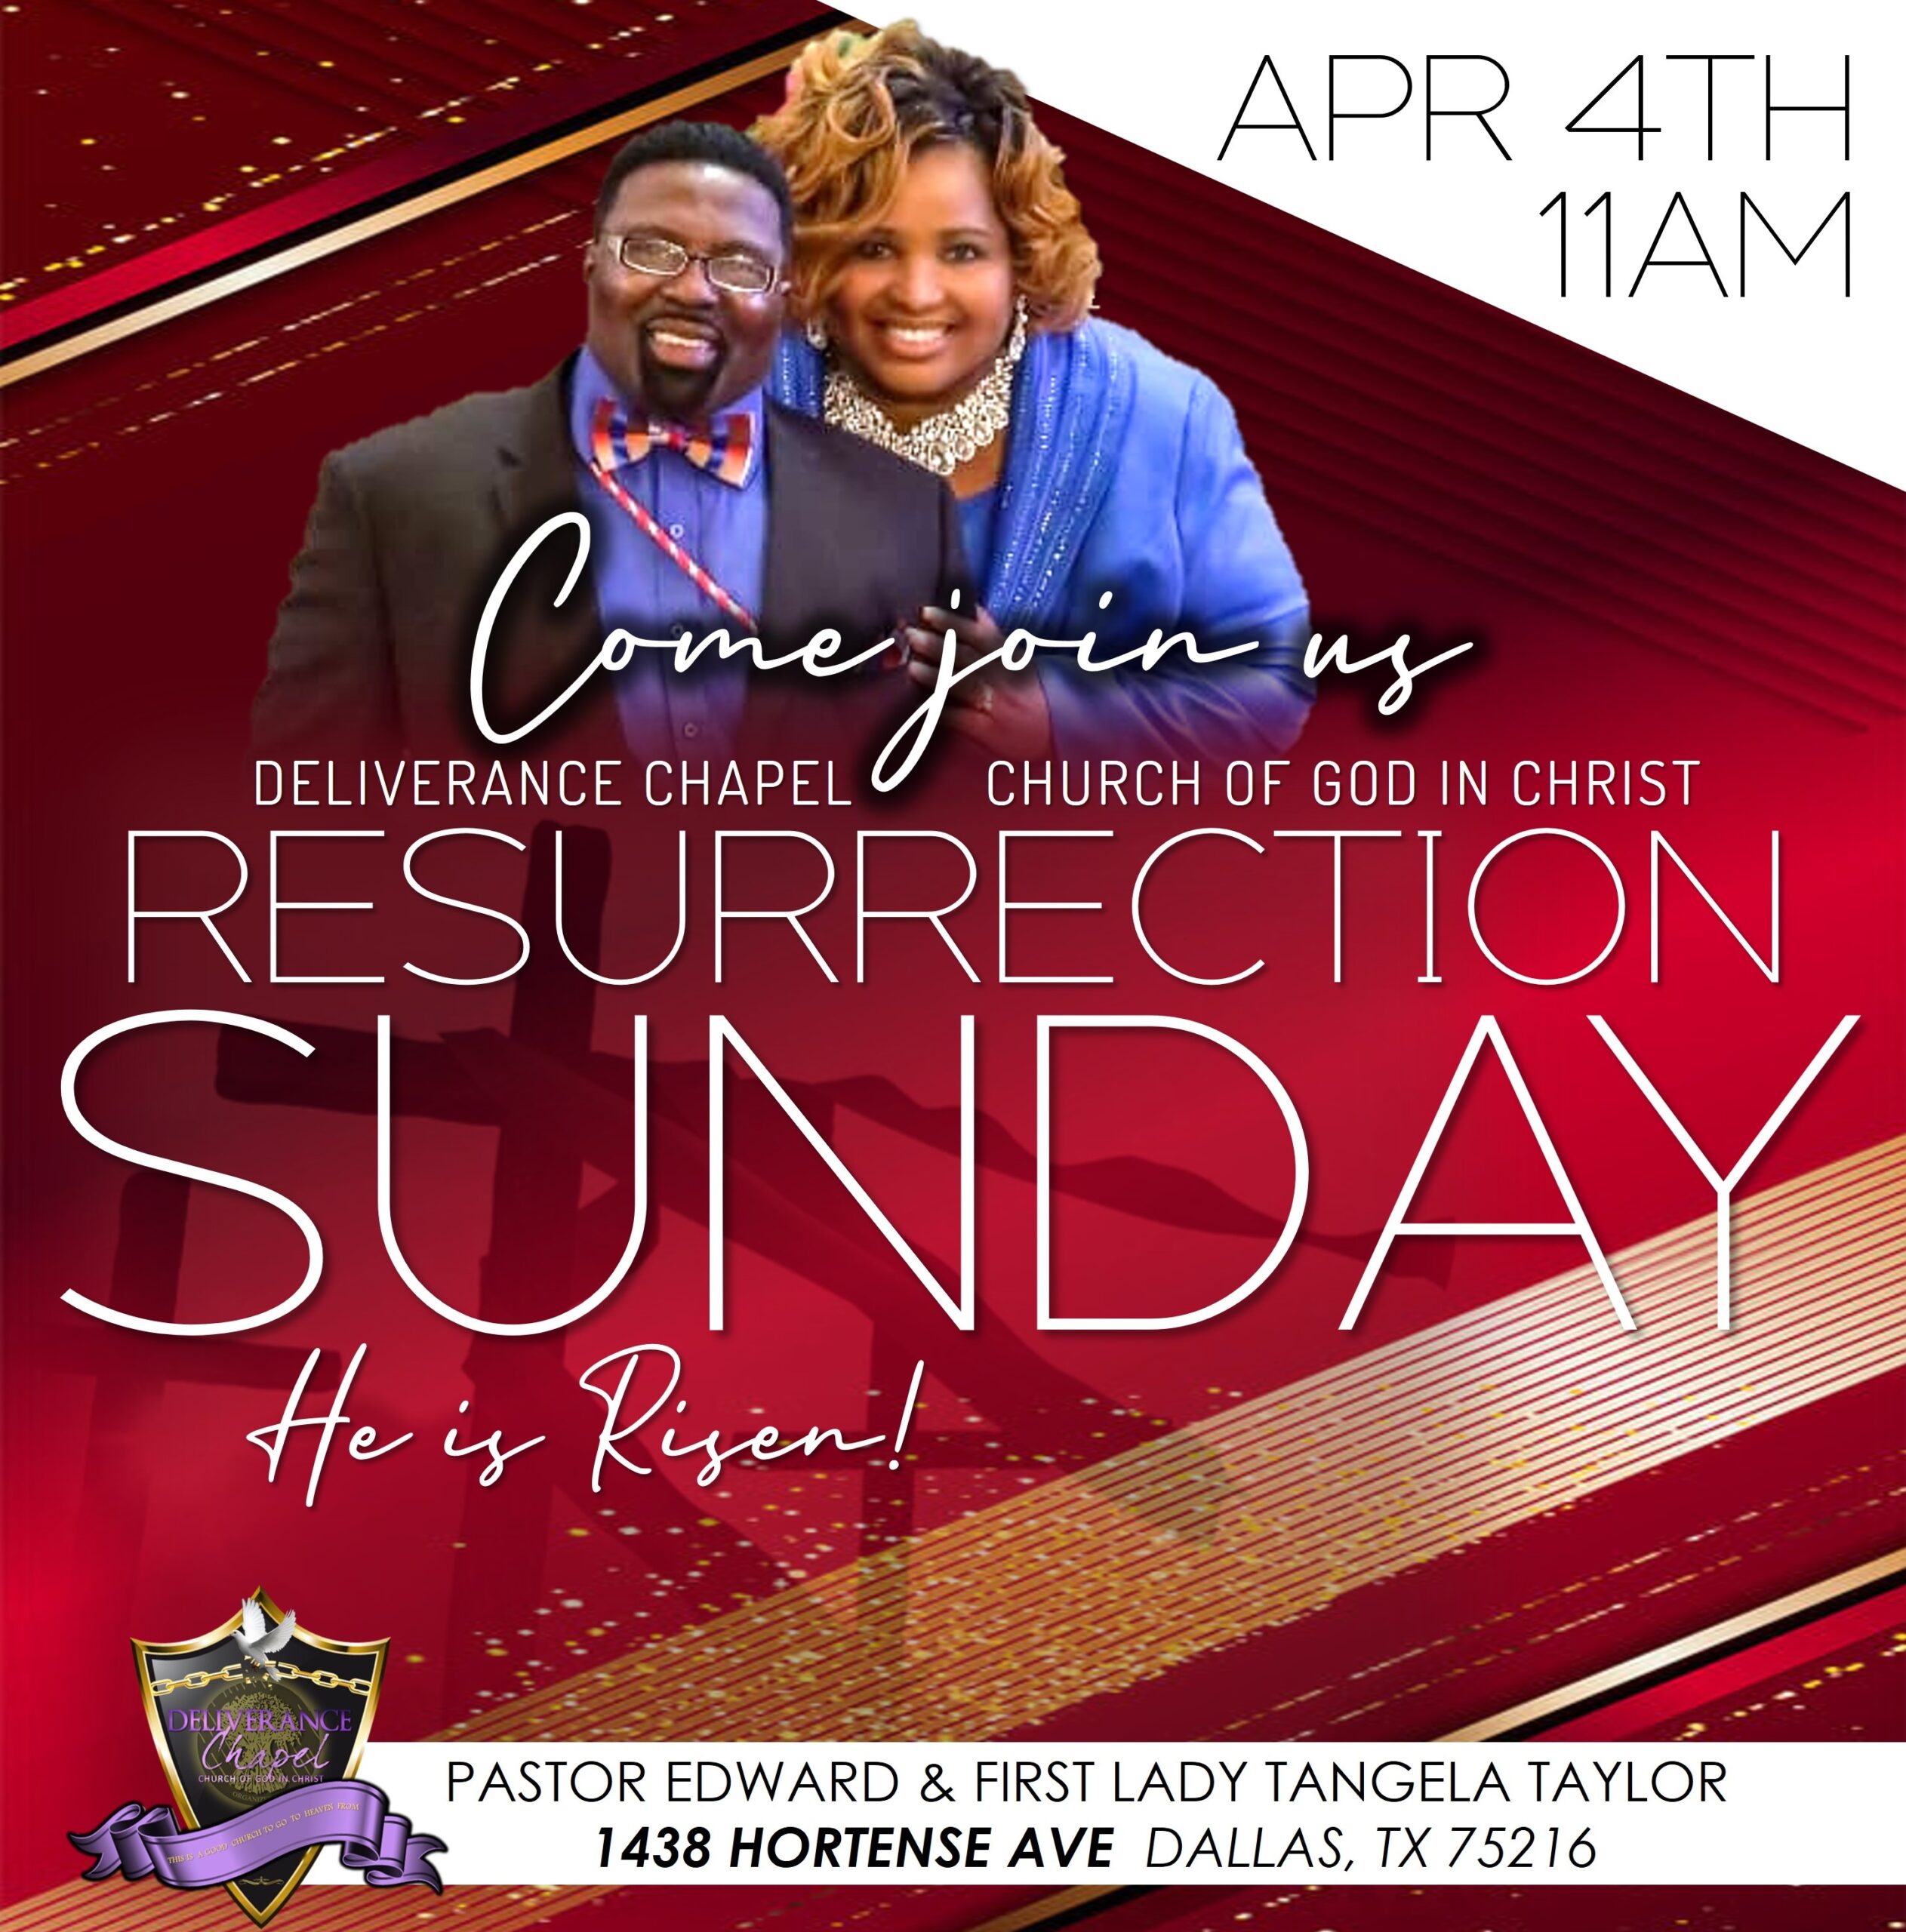 Resurrection Sunday!